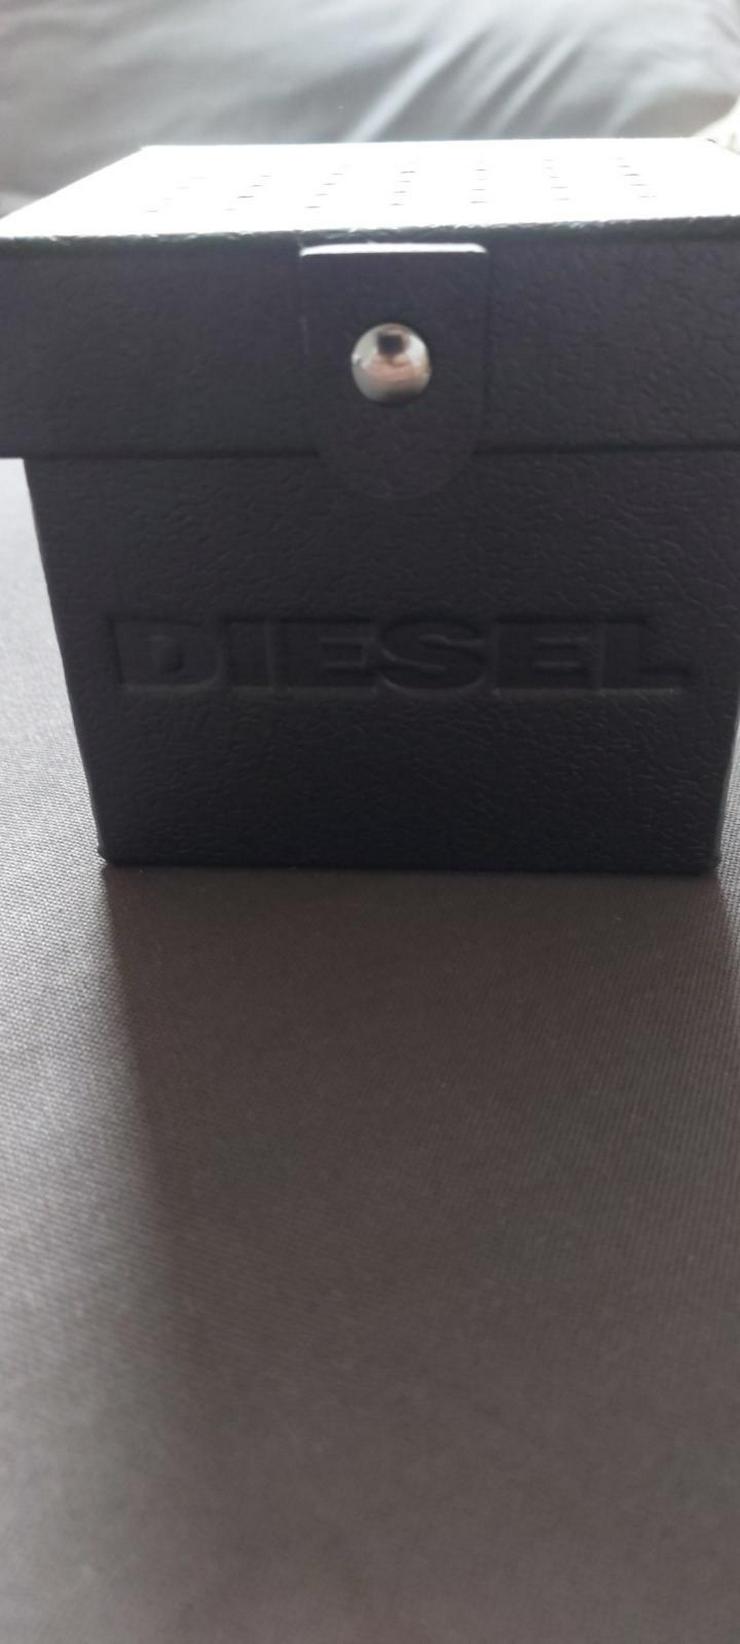 Diesel DZ 4531 Uhr Original Verpackt - Weitere - Bild 4